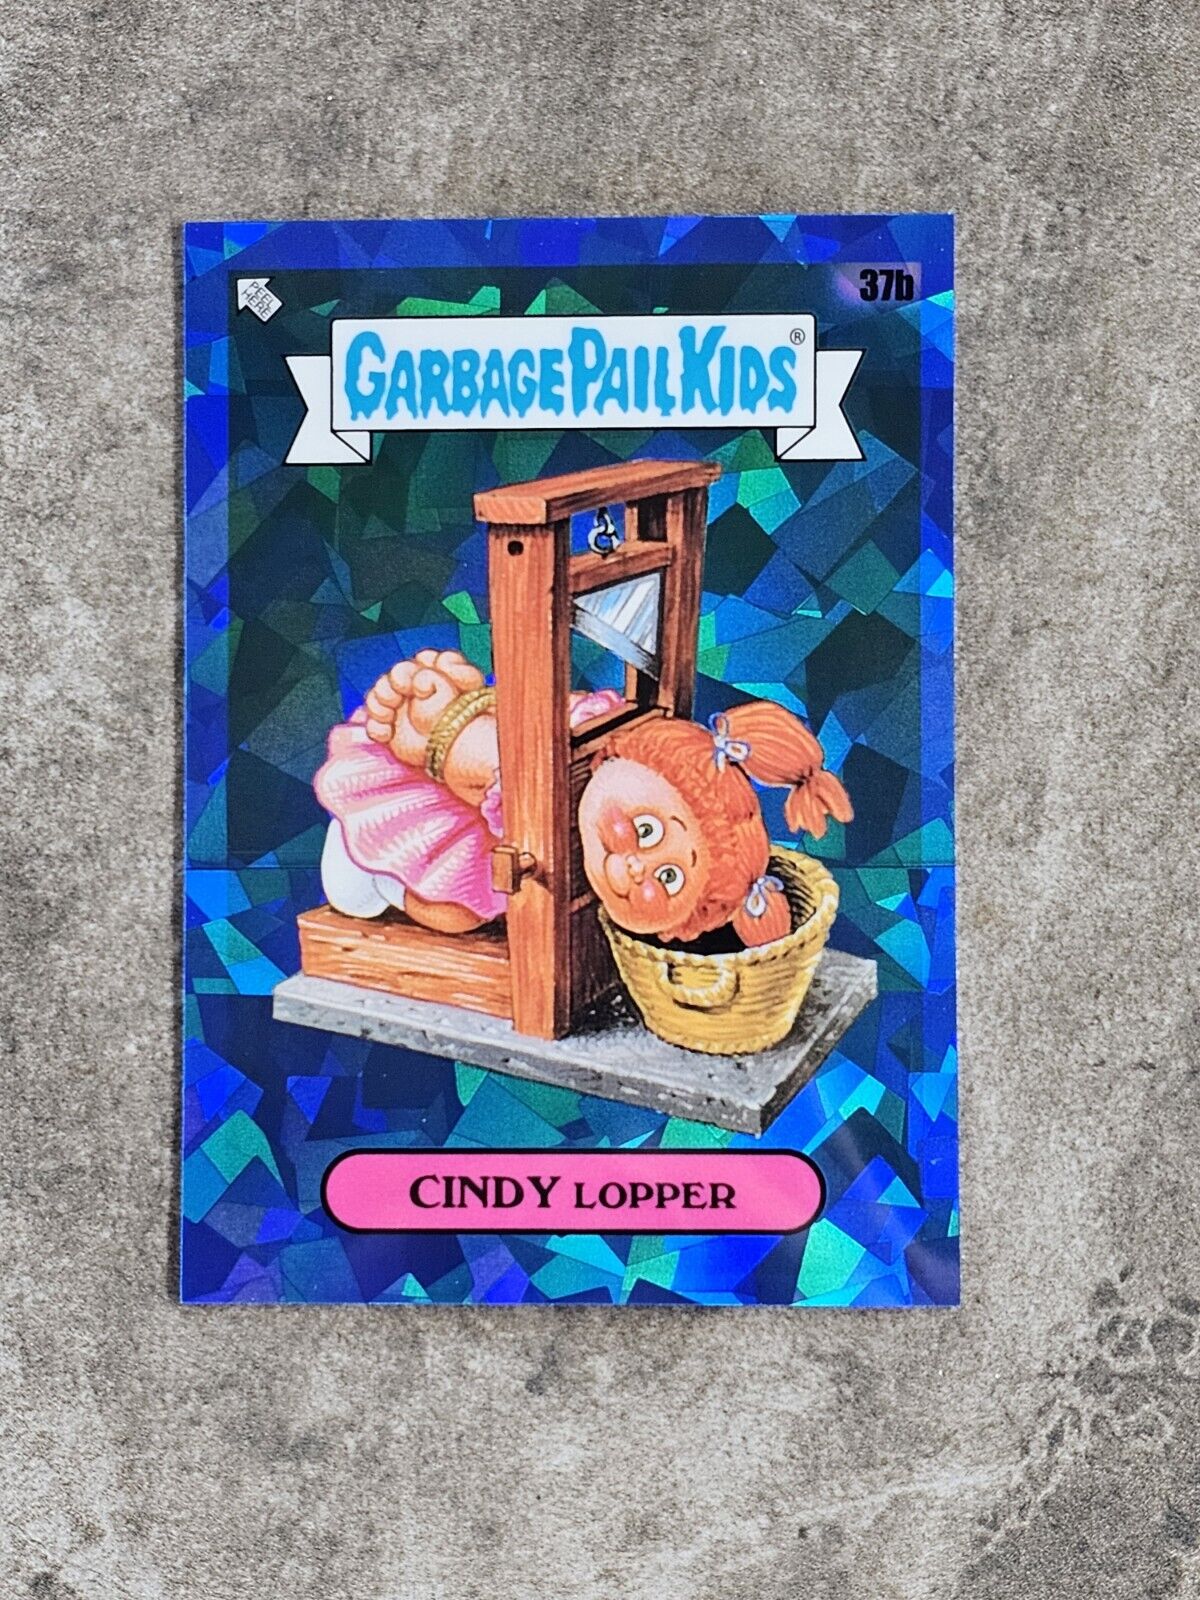 2020 Topps Garbage Pail Kids Sapphire Edition Cindy Lopper 37b GPK OS1 🔥 